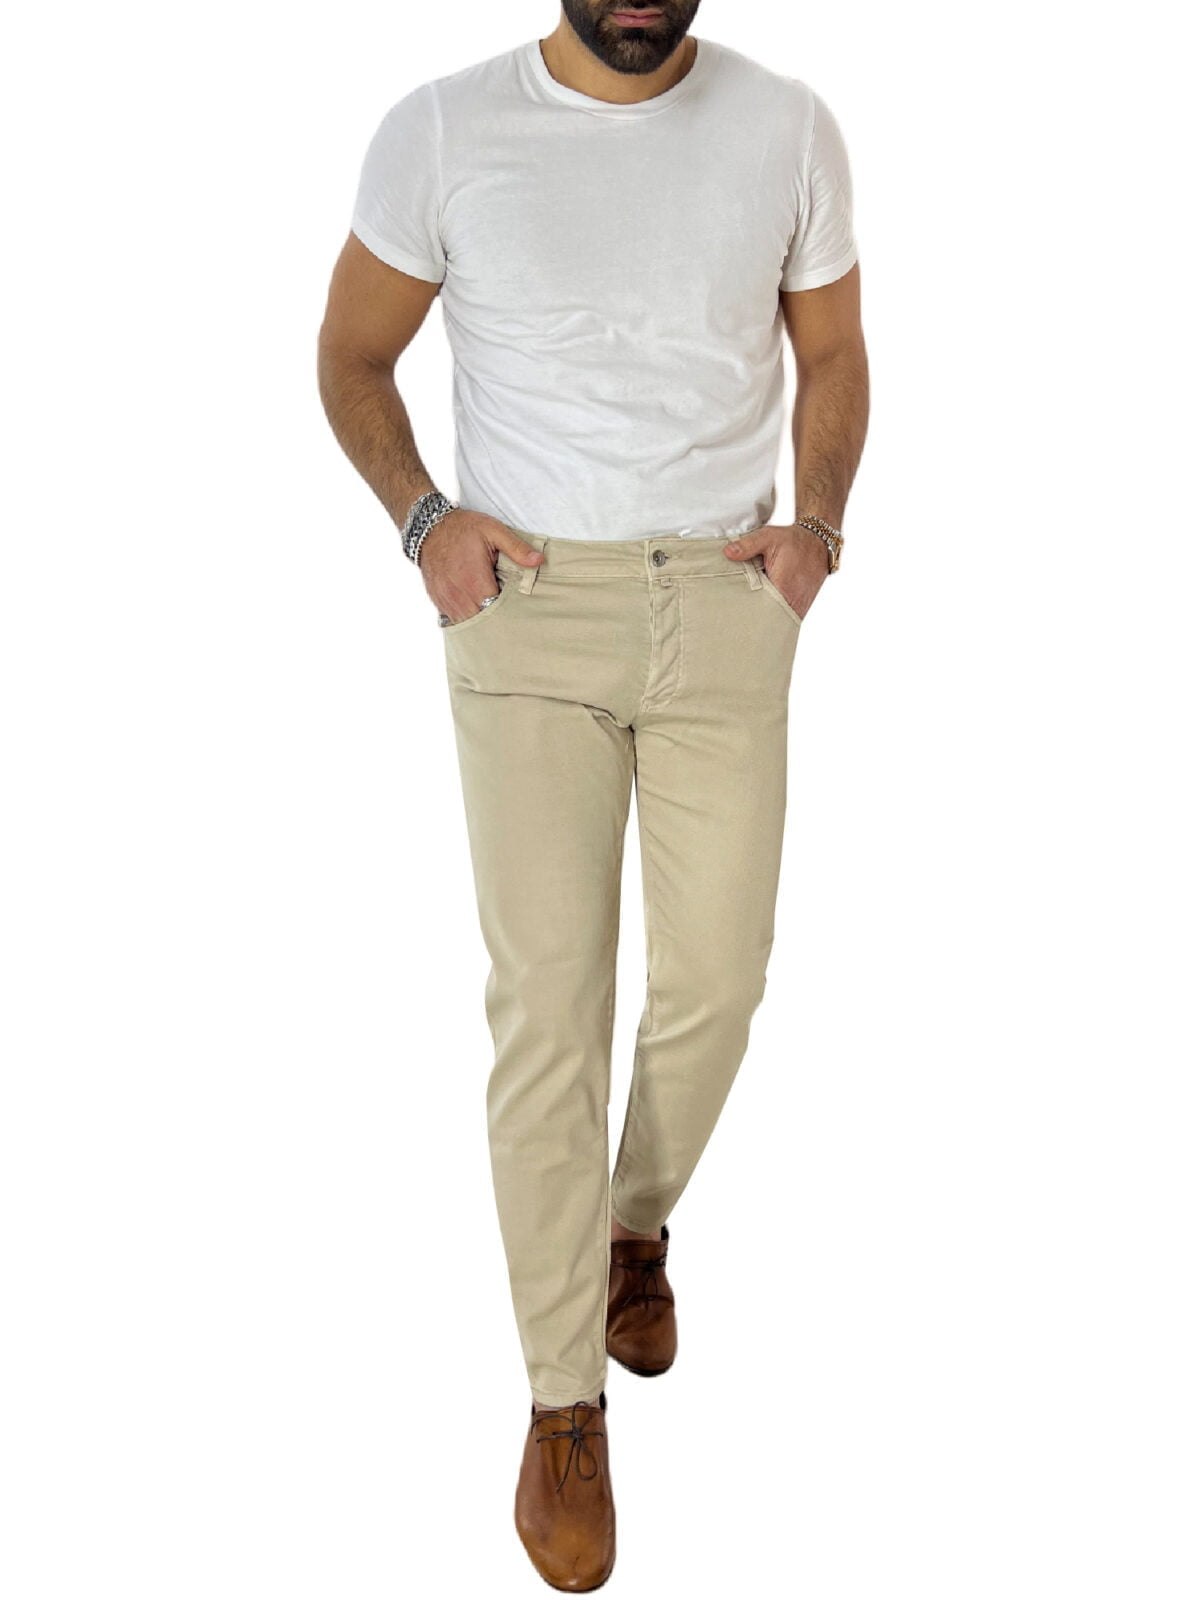 Jeans uomo beige tinta unita modello 5 tasche slim fit estivo made in italy